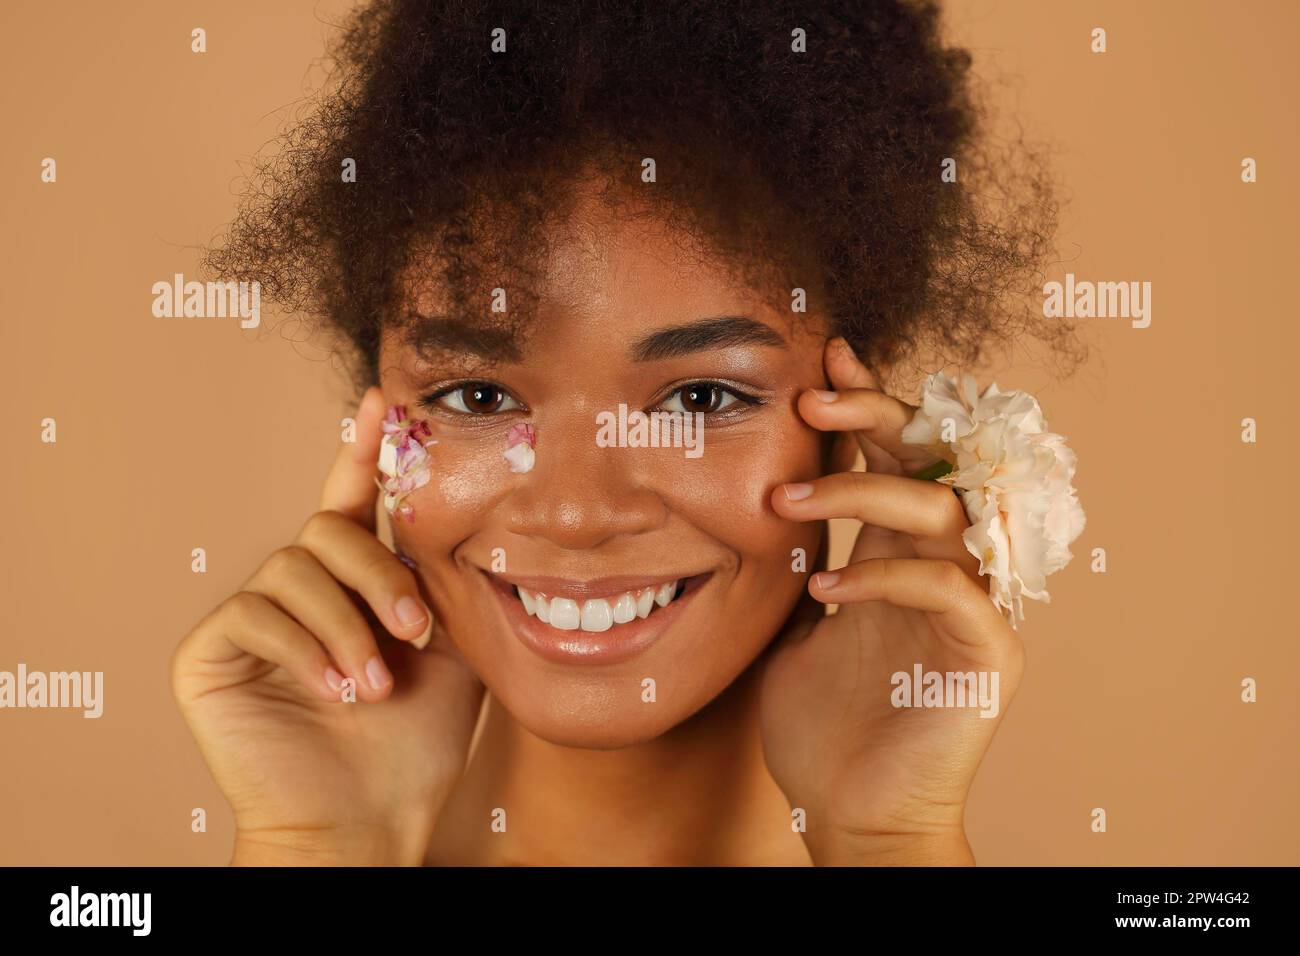 Porträt eines wunderschönen dunkelhäutigen Models mit hohem Afro-Haarschnitt und natürlichem Make-up mit Blütenblättern auf einer Seite ihres Gesichts enthält die pinkfarbene Nelkenblume Stockfoto